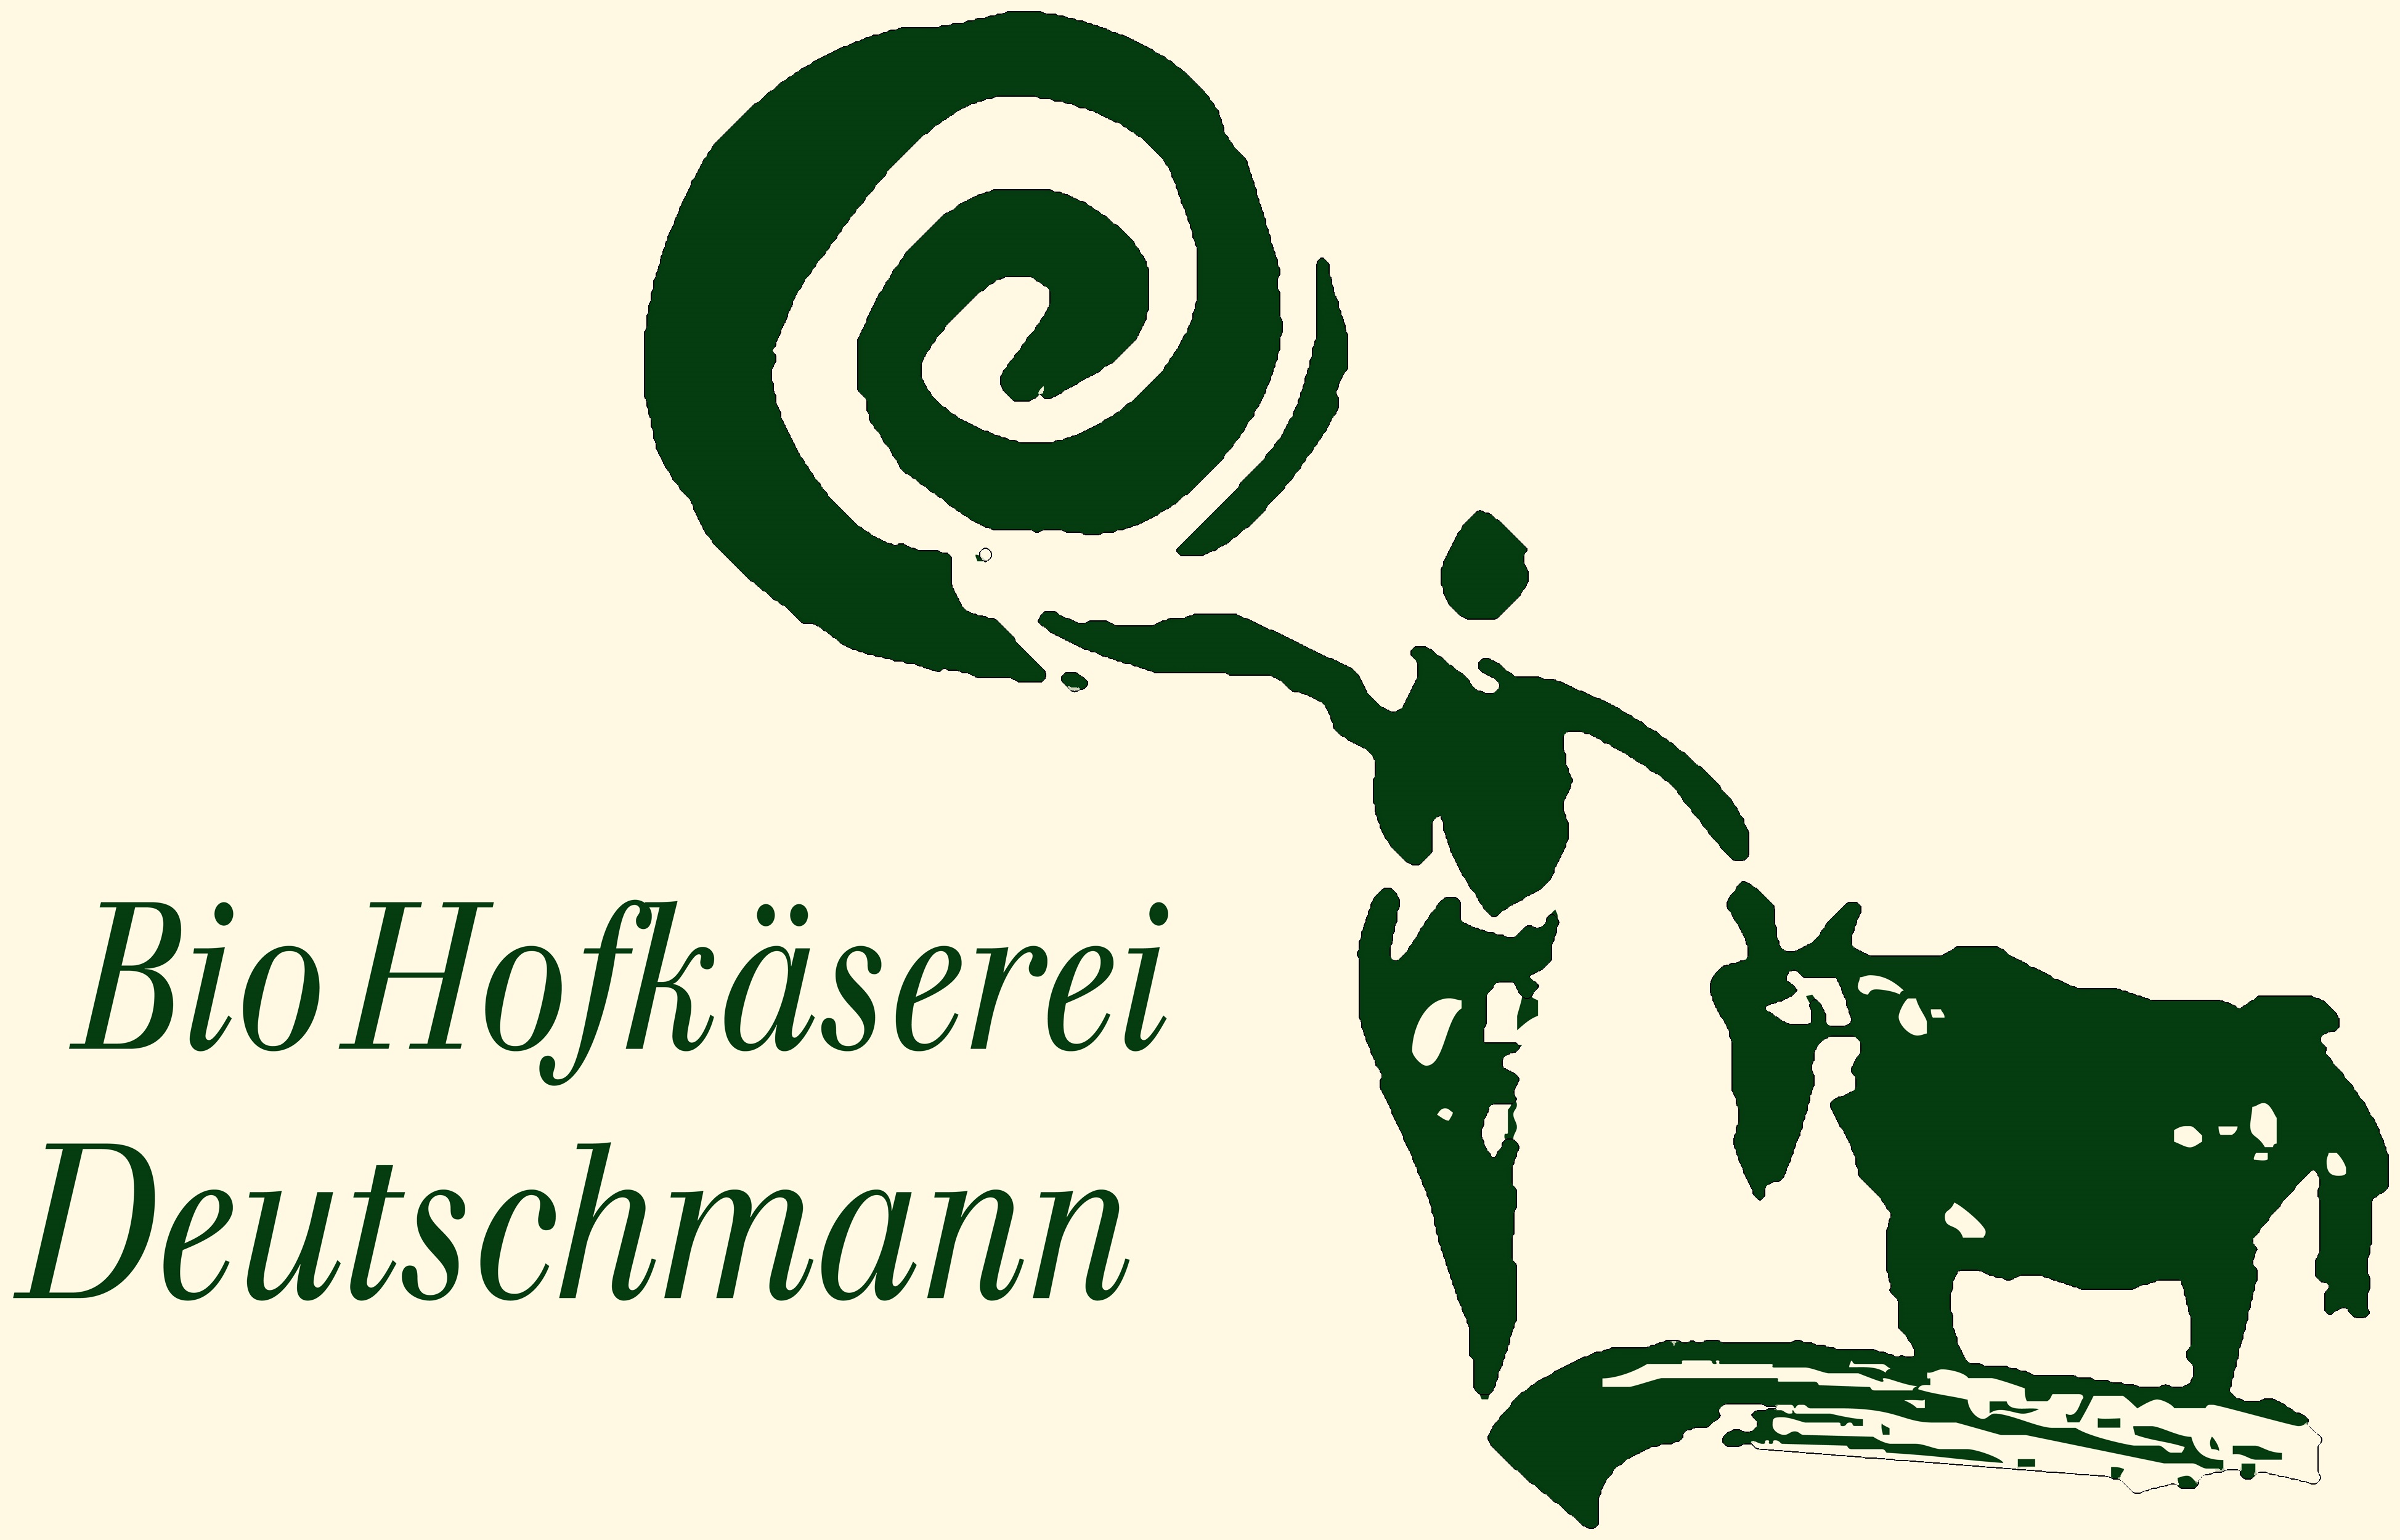 Deutschmann Hofkäserei